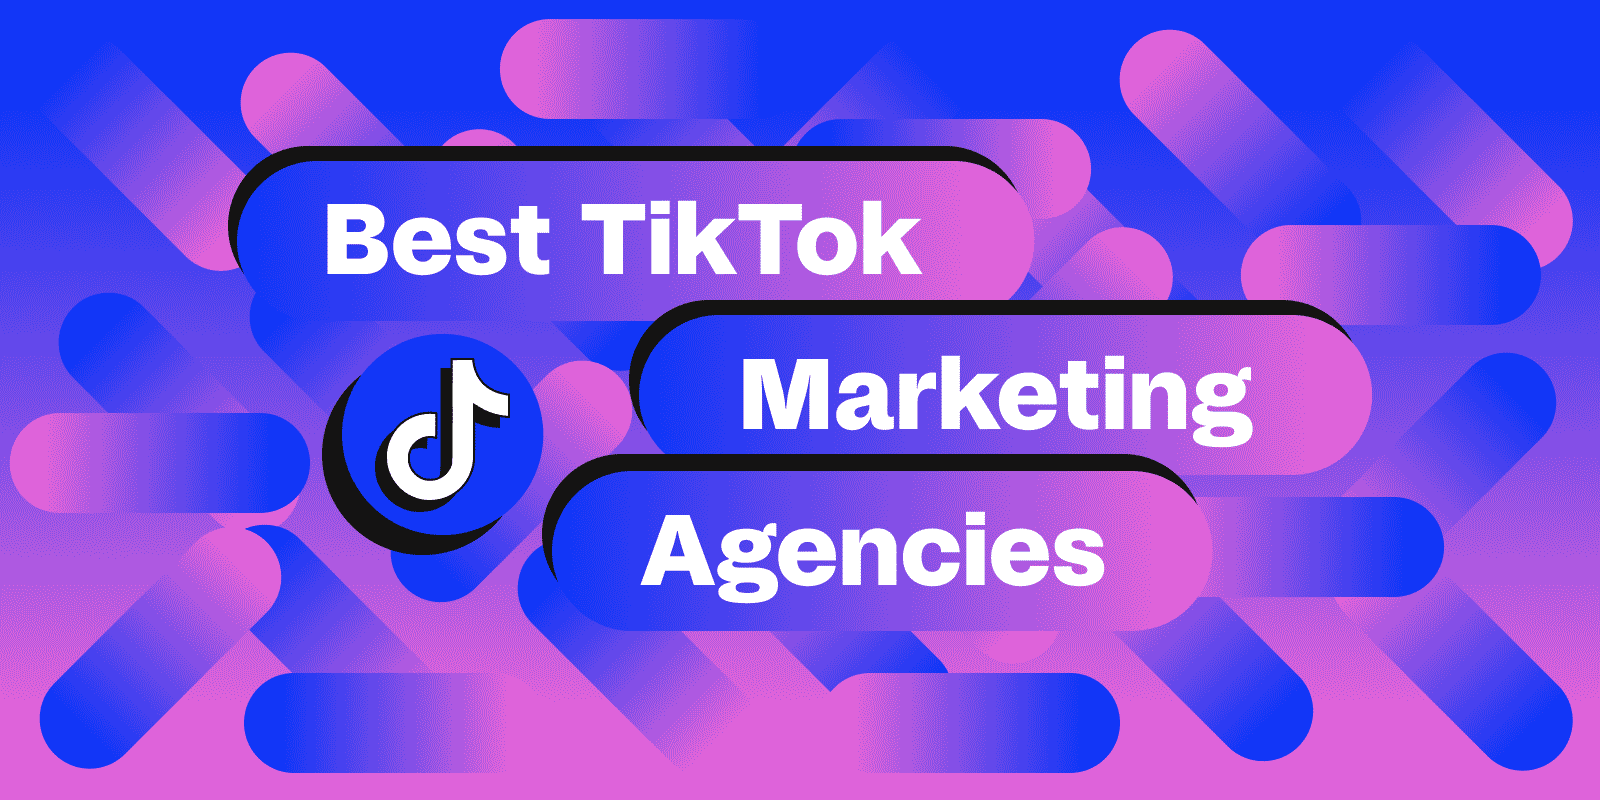 Best TikTok Marketing Agencies